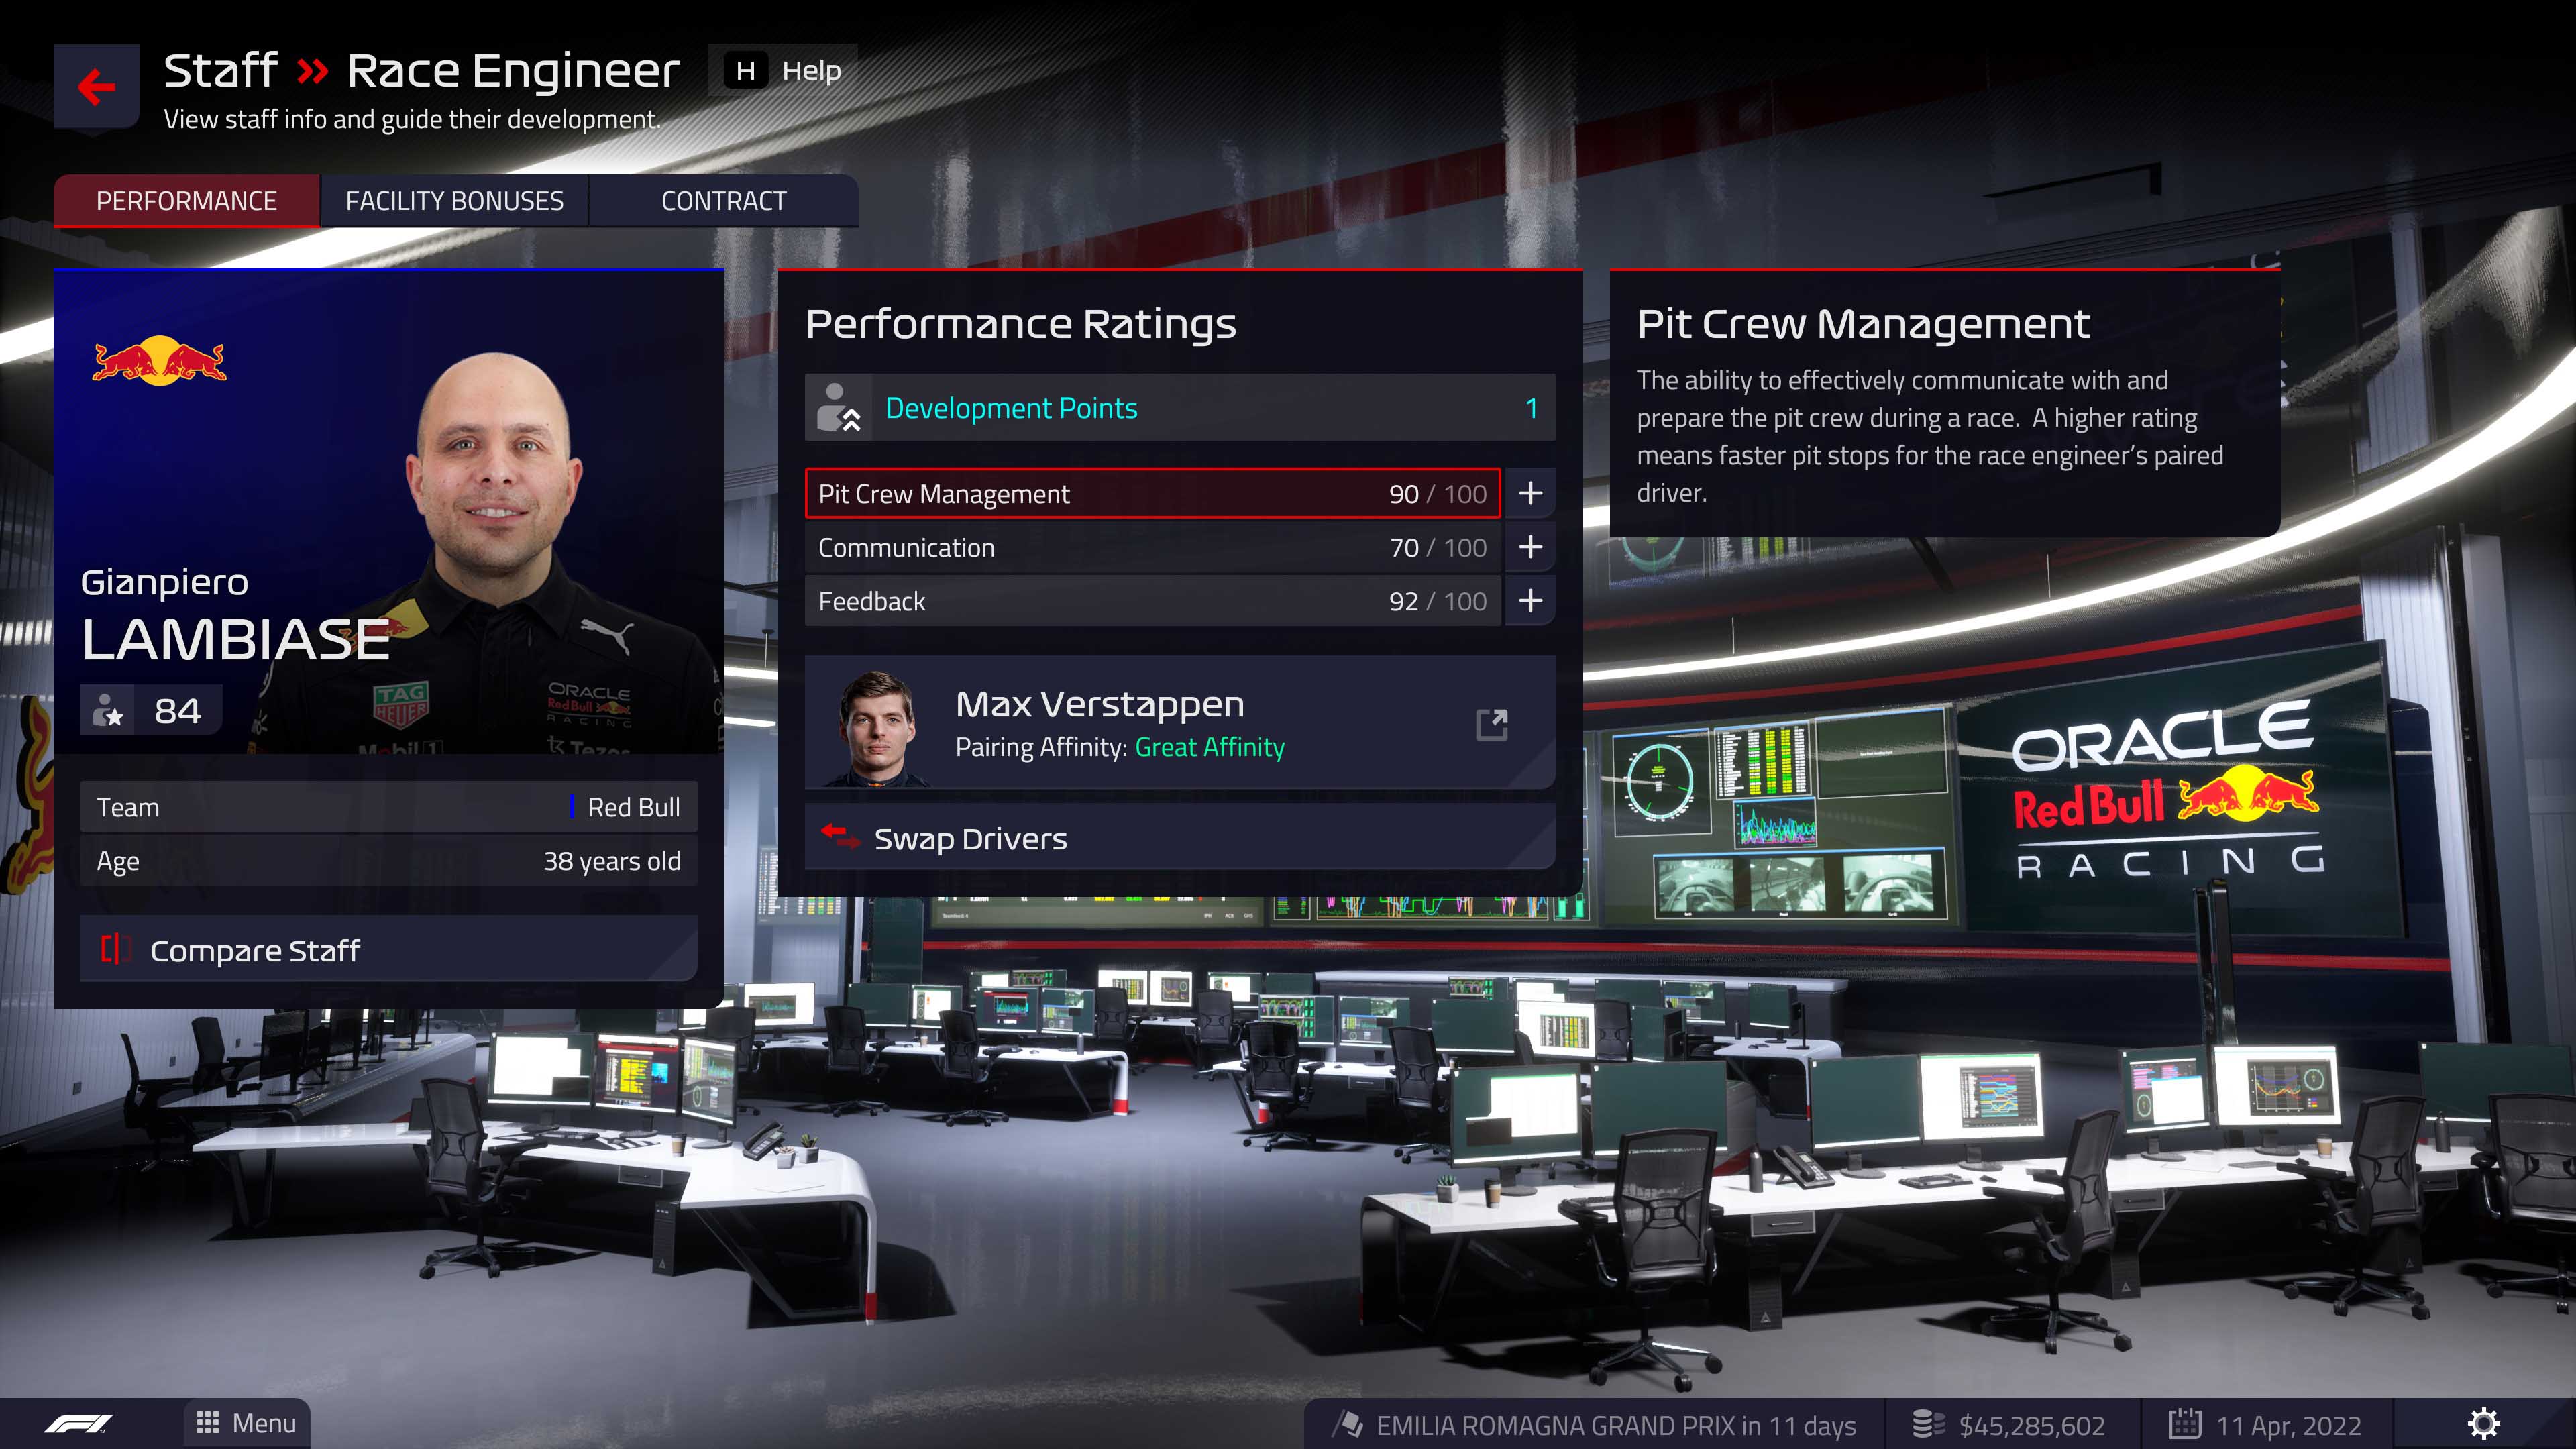 Max Verstappen's race engineer rating.